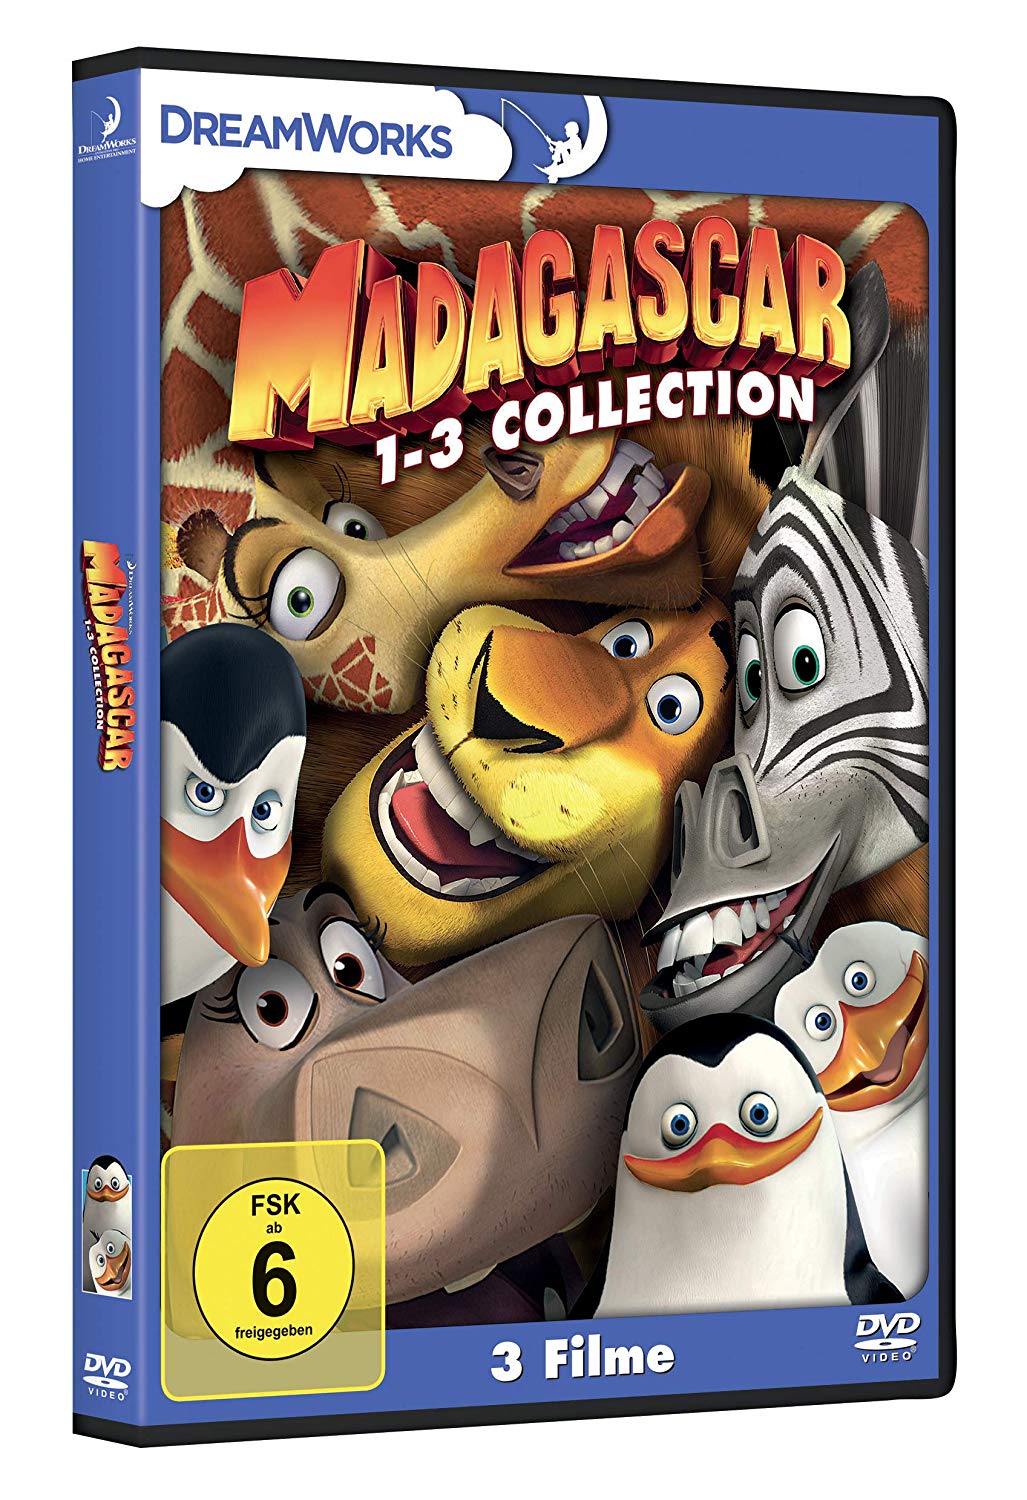 MADAGASCAR 1-3 COLLECTION (3 DVD)